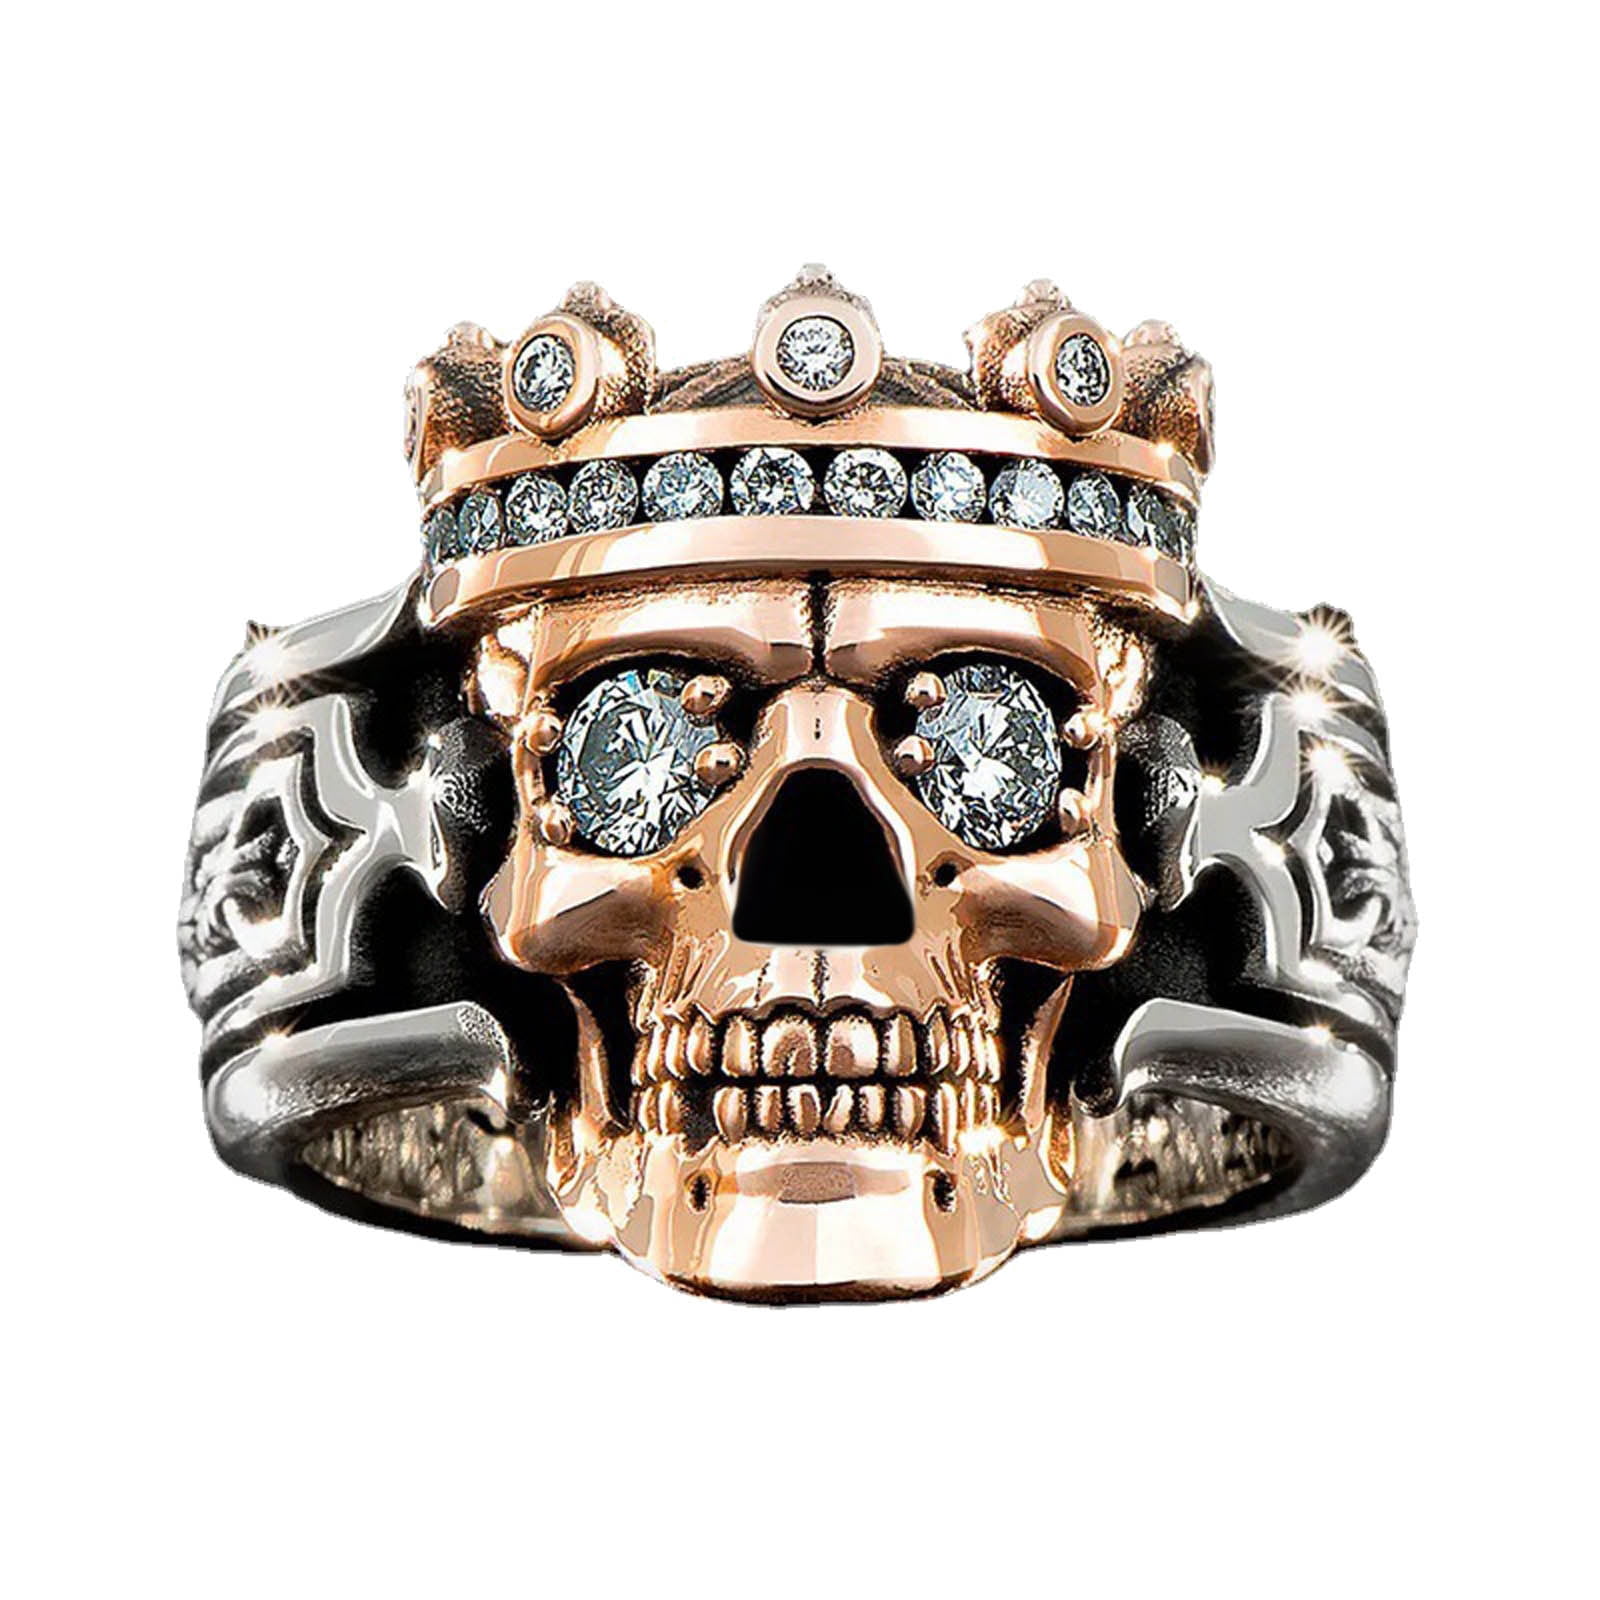 Skull Head Ring for Men Vintage Punk Jewelry Gift for Men Boys Gothic Black Eye Skull Ring Cocktail Party Ring CZ Crown Skull King Ring Skull Hand Ring Halloween Biker